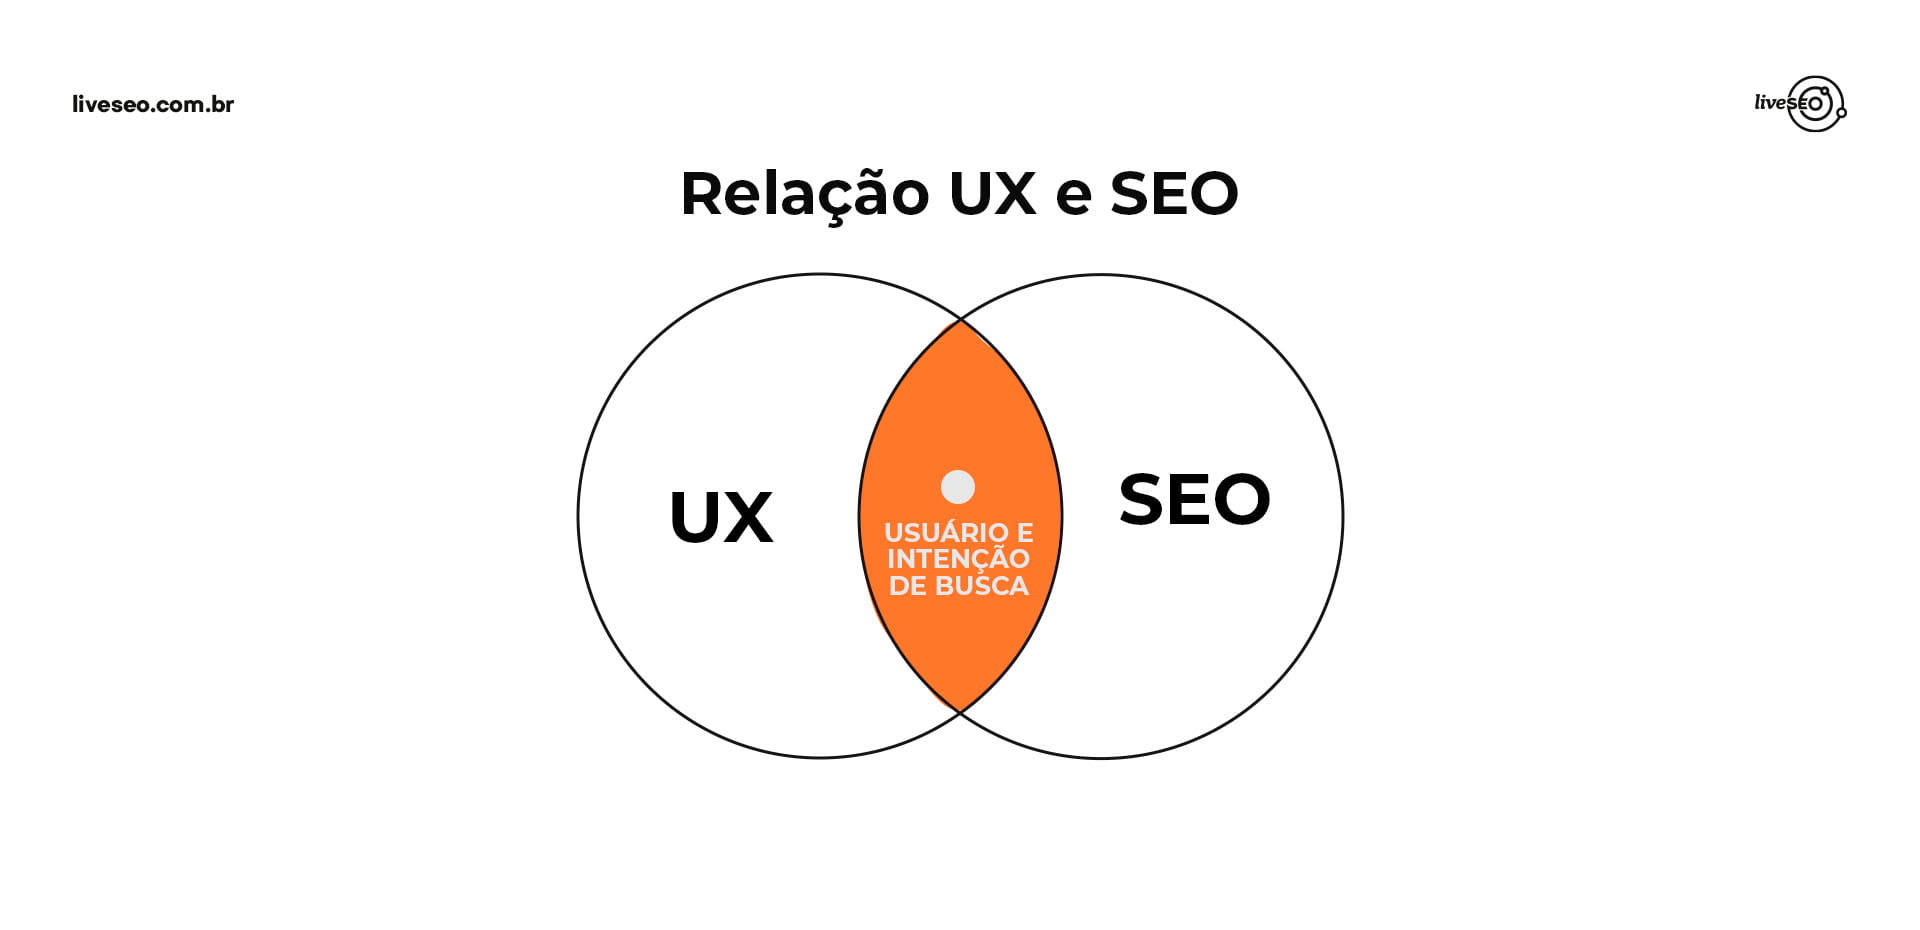 Imagem com diagrama de Venn representando a relação entre UX e SEO